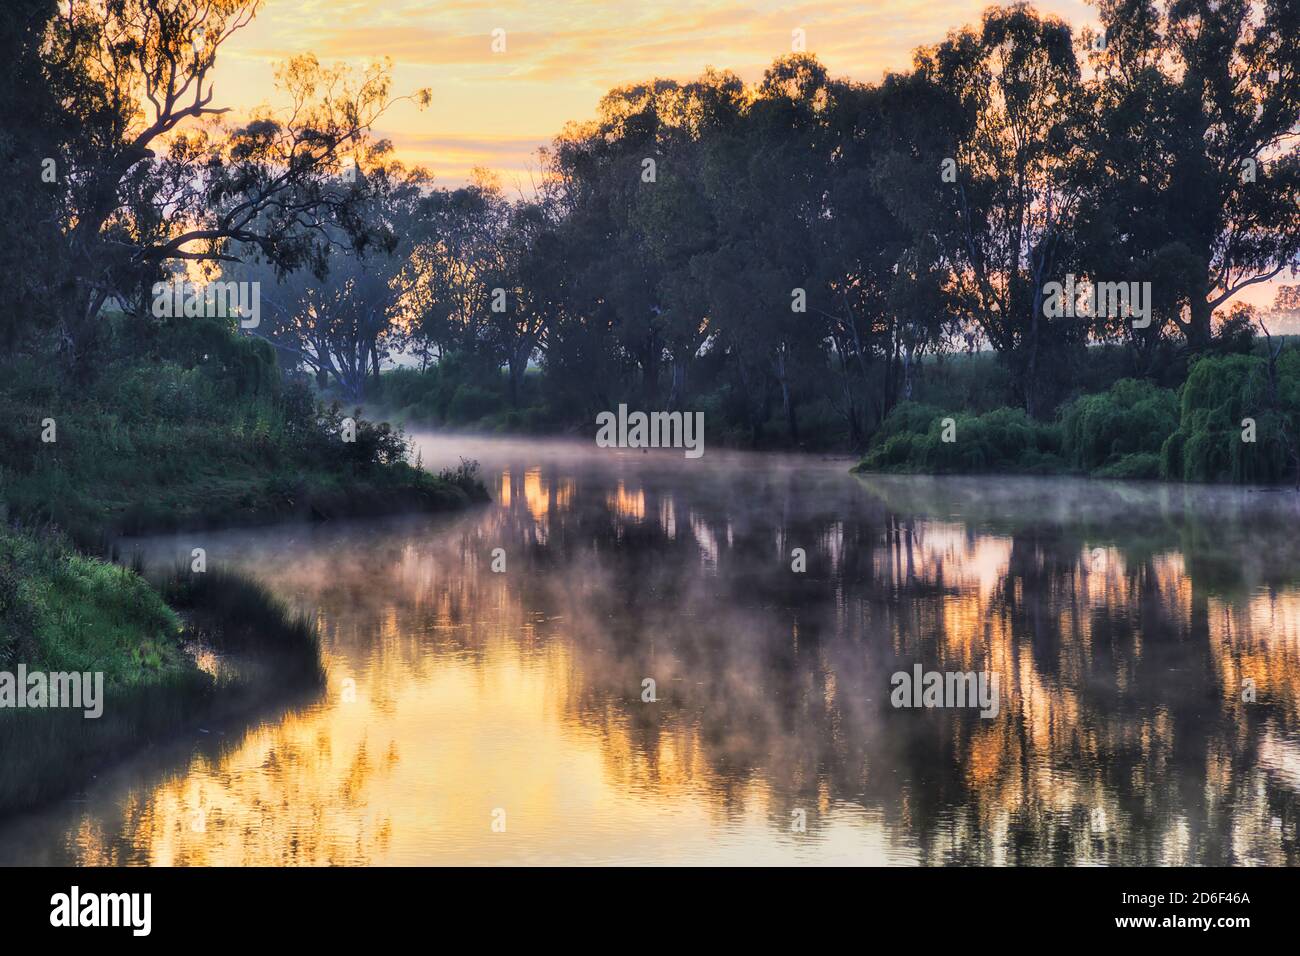 Sonnenaufgang Momente auf Macquarie River in Dubbo Stadt der Great Western Plains von NSW, Australien. Zartes Nebelwasser verdunstet von der Wasseroberfläche in der warmen Sonne Stockfoto